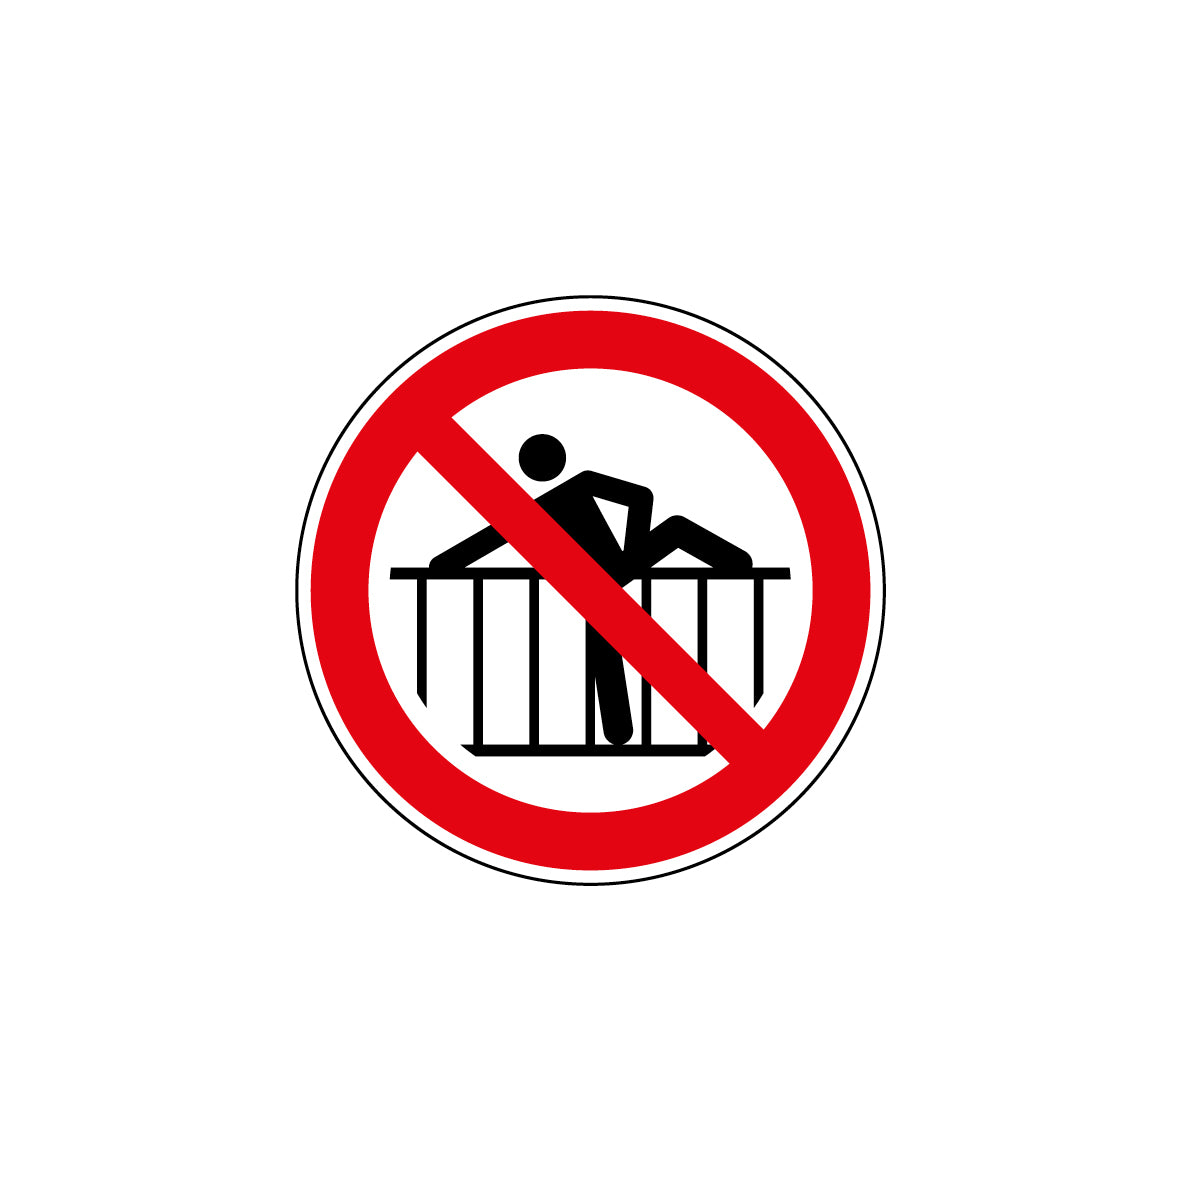 6.V-043 Barriere übersteigen verboten,Verbotszeichen, ISO